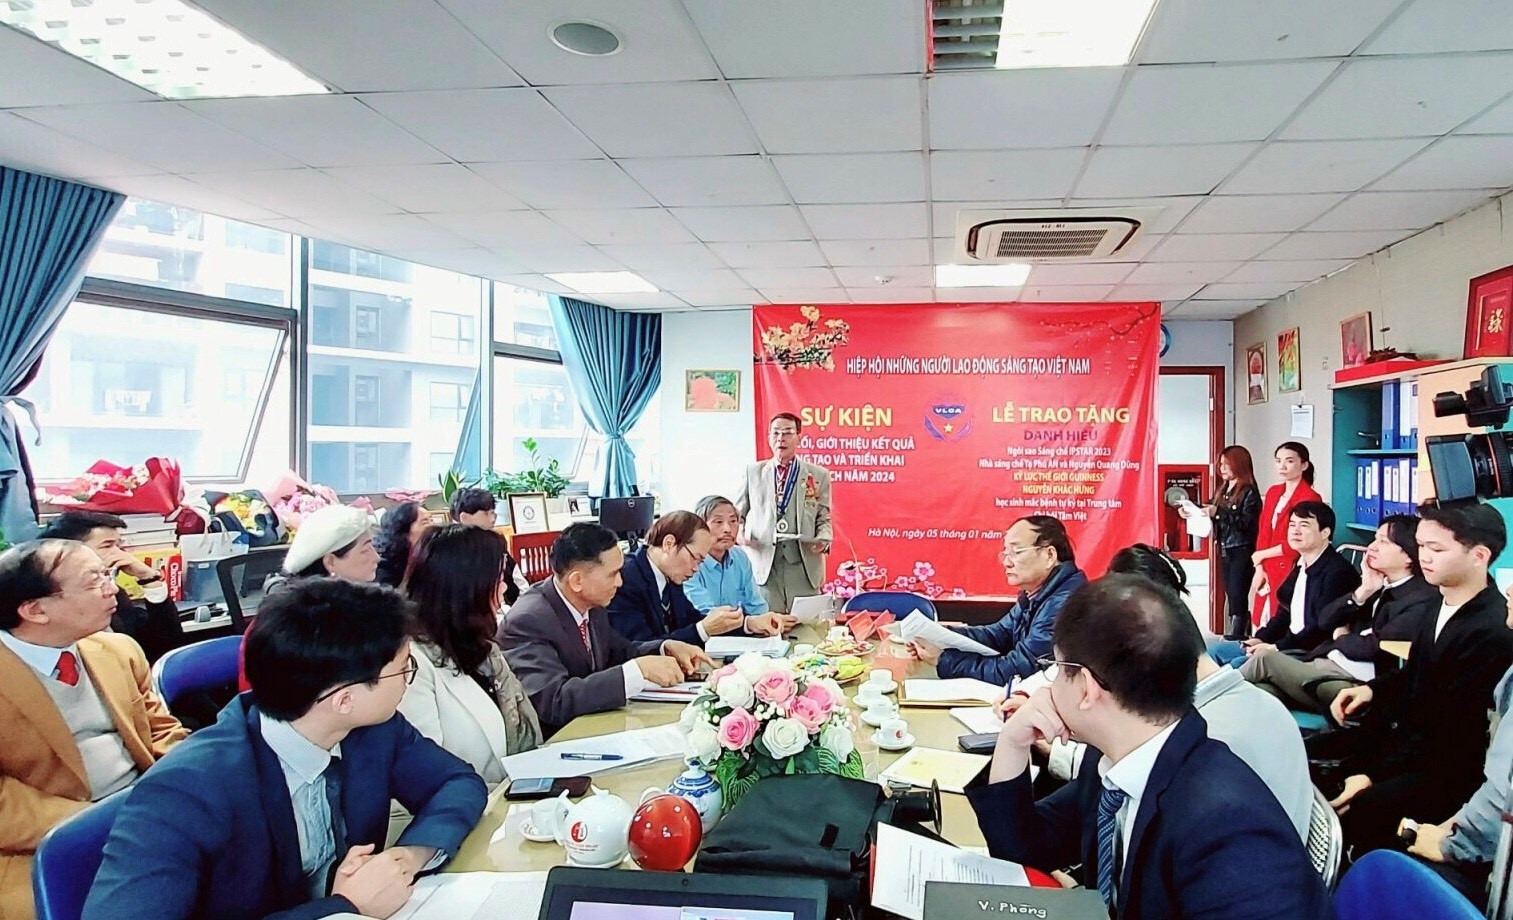 Hiệp hội Những người lao động sáng tạo Việt Nam tổ chức hội nghị Kết nối, giới thiệu kết quả sáng tạo và lễ trao Danh hiệu Ngôi sao sáng chế IPSTAR; Bằng kỉ lục thế giới GUINNESS - 1